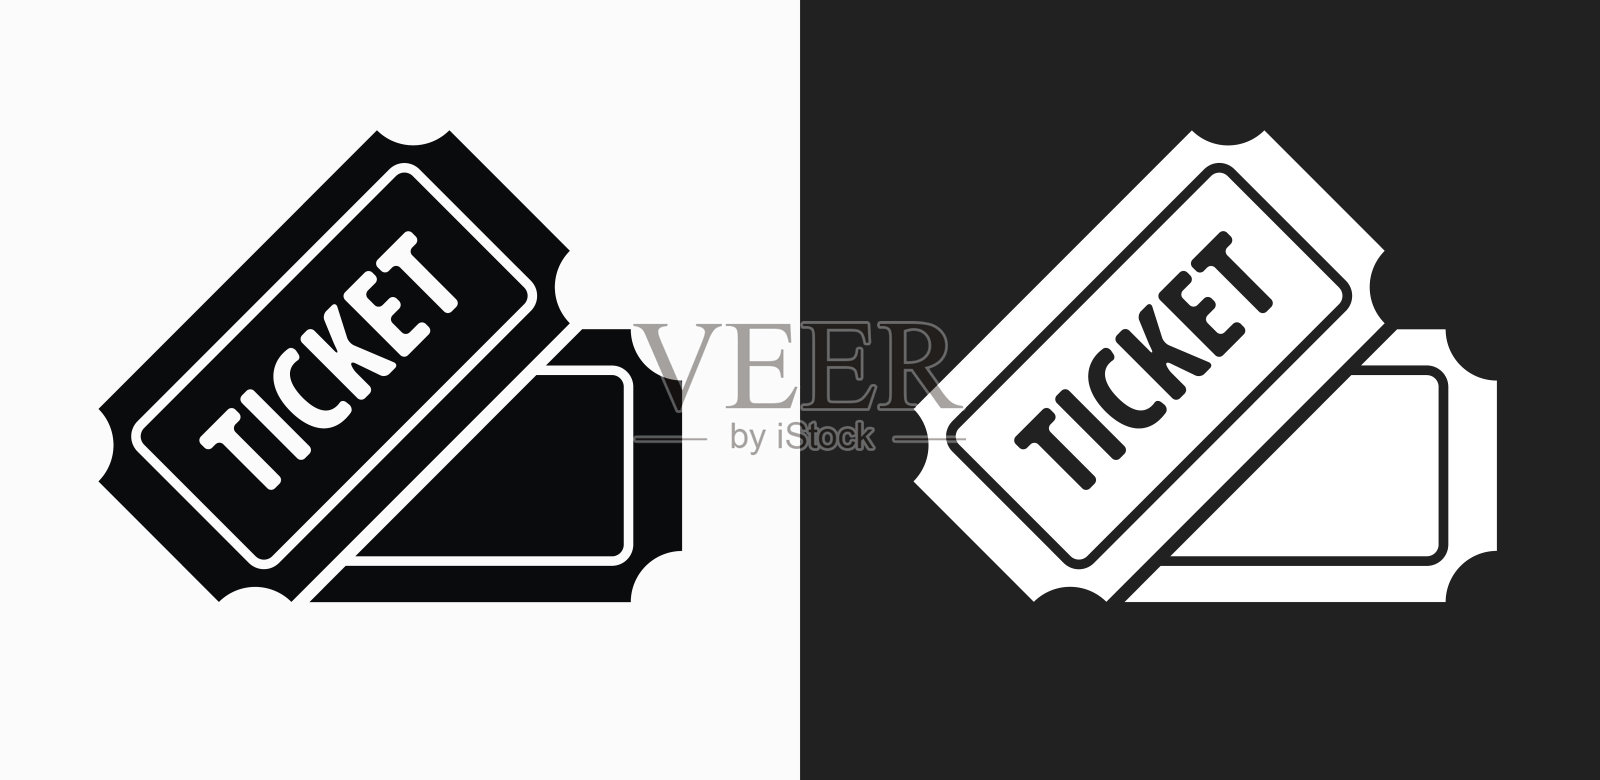 票图标上的黑色和白色矢量背景设计模板素材